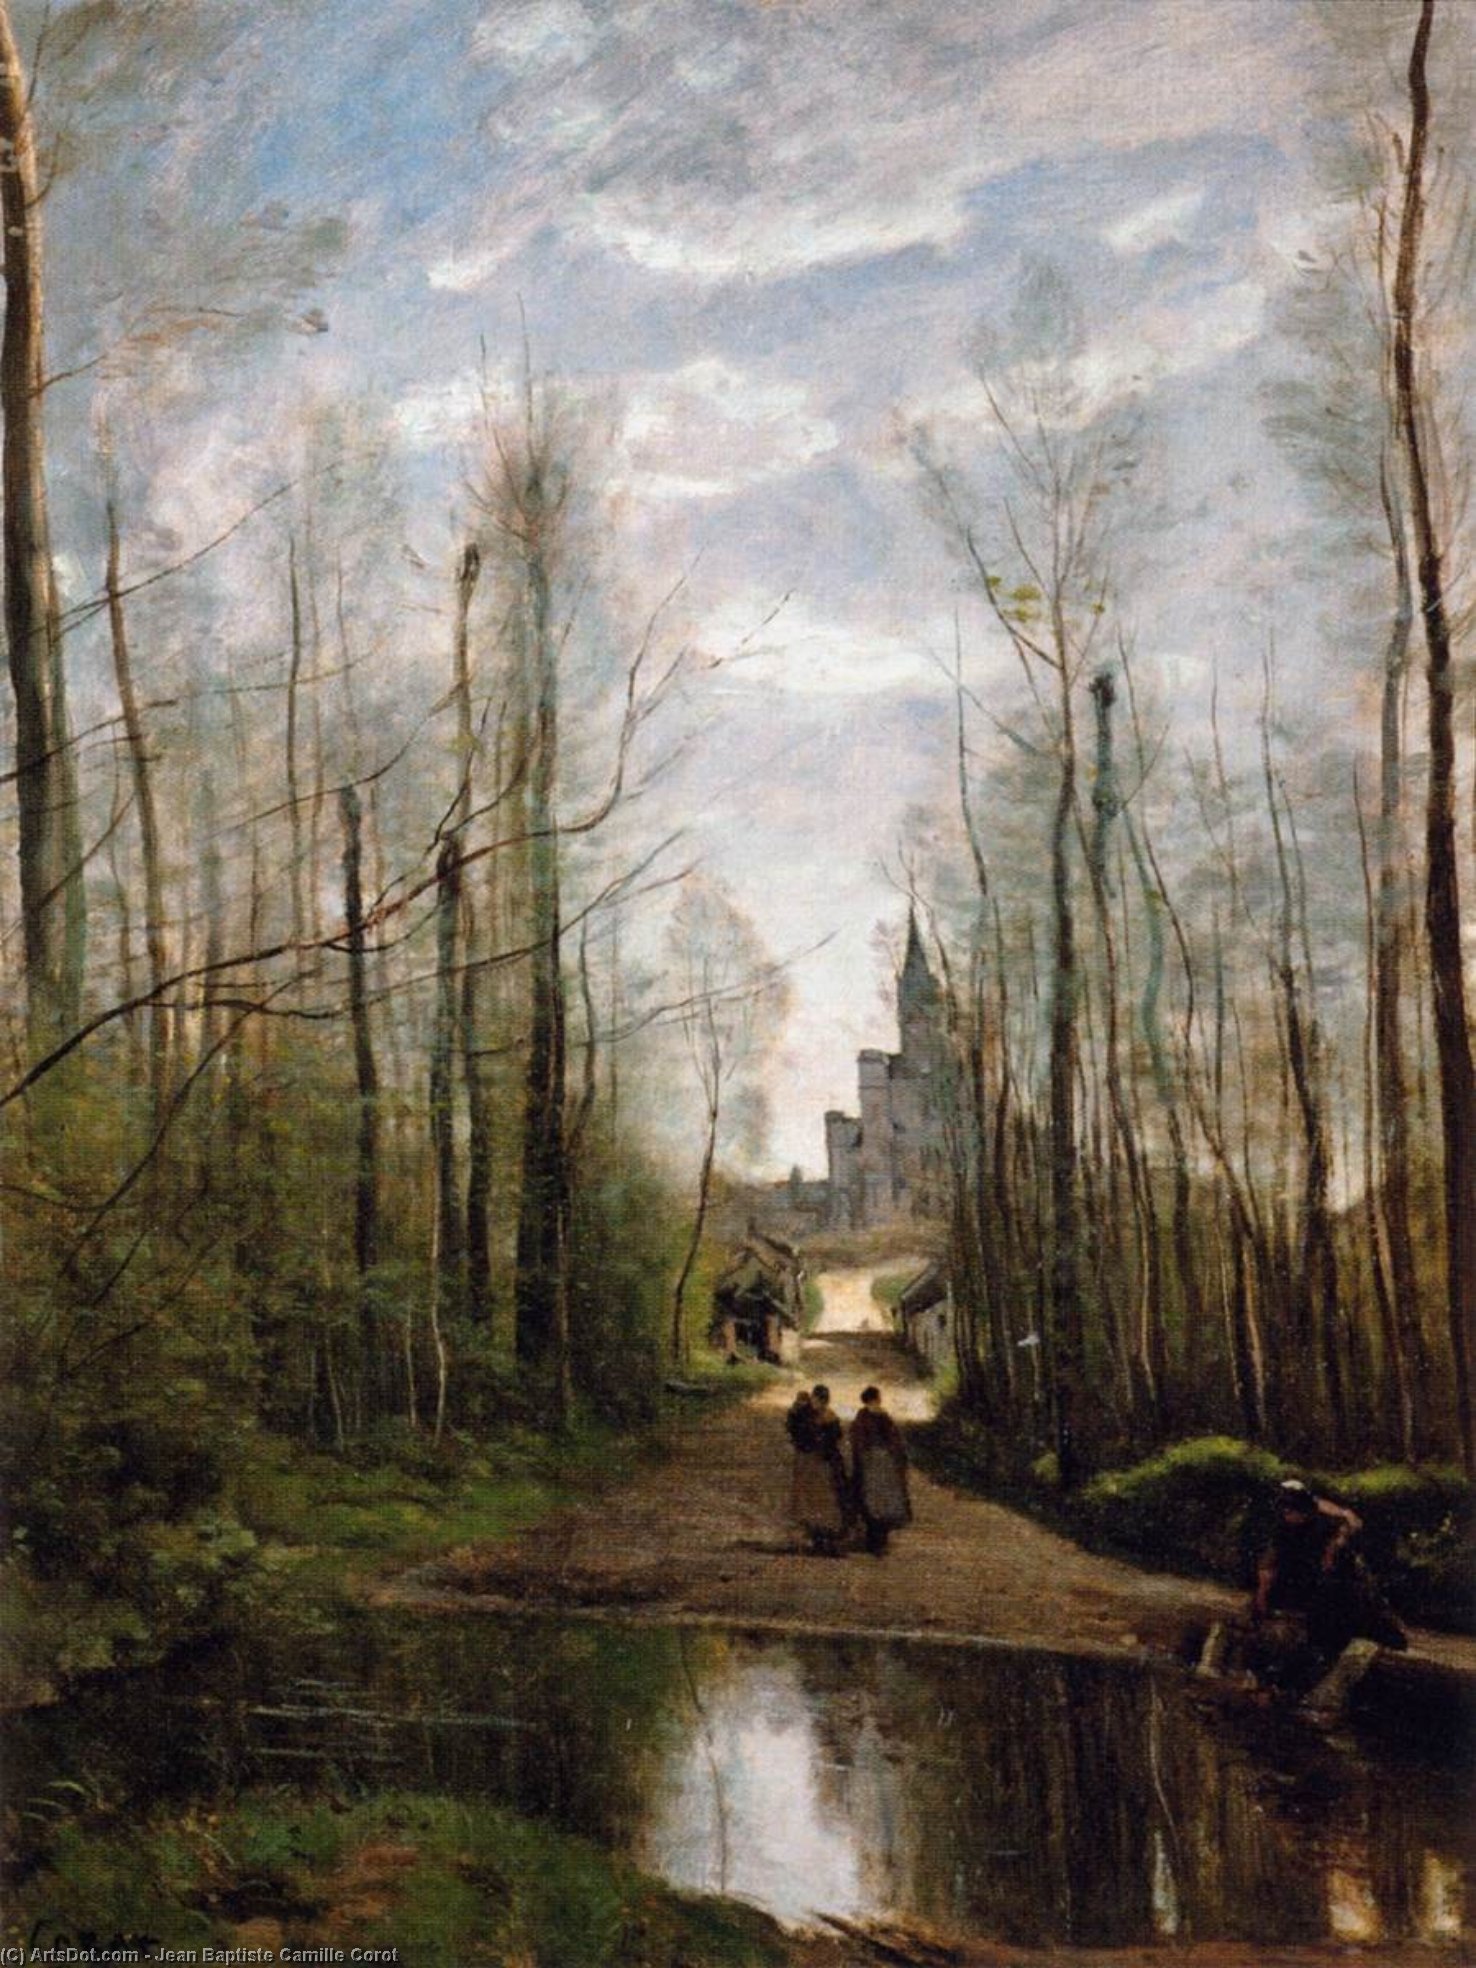 WikiOO.org - אנציקלופדיה לאמנויות יפות - ציור, יצירות אמנות Jean Baptiste Camille Corot - The Church of Marissel, near Beauvais